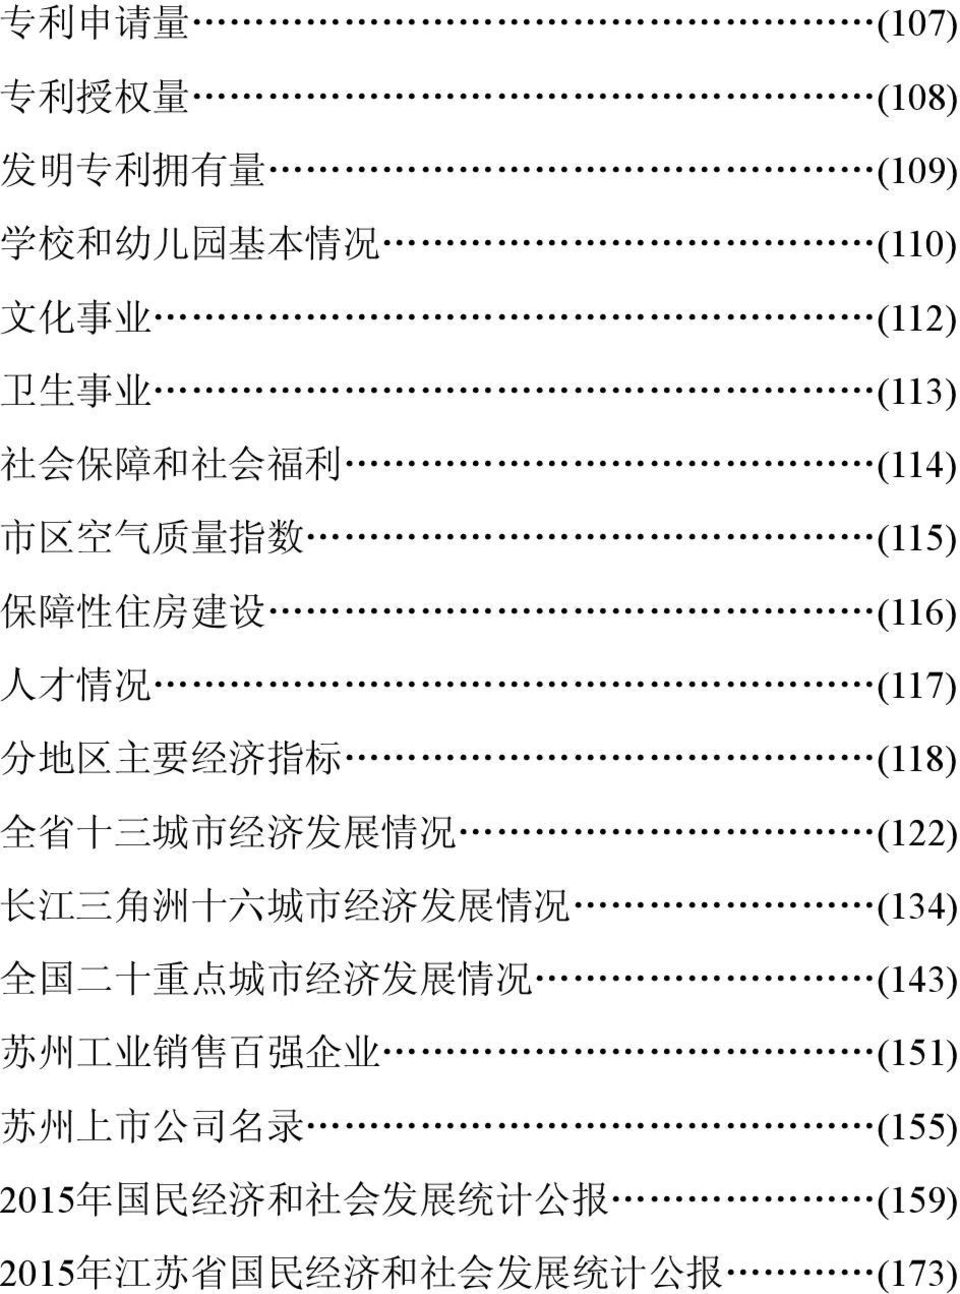 市 经 济 发 展 情 况 (122) 长 江 三 角 洲 十 六 城 市 经 济 发 展 情 况 (134) 全 国 二 十 重 点 城 市 经 济 发 展 情 况 (143) 苏 州 工 业 销 售 百 强 企 业